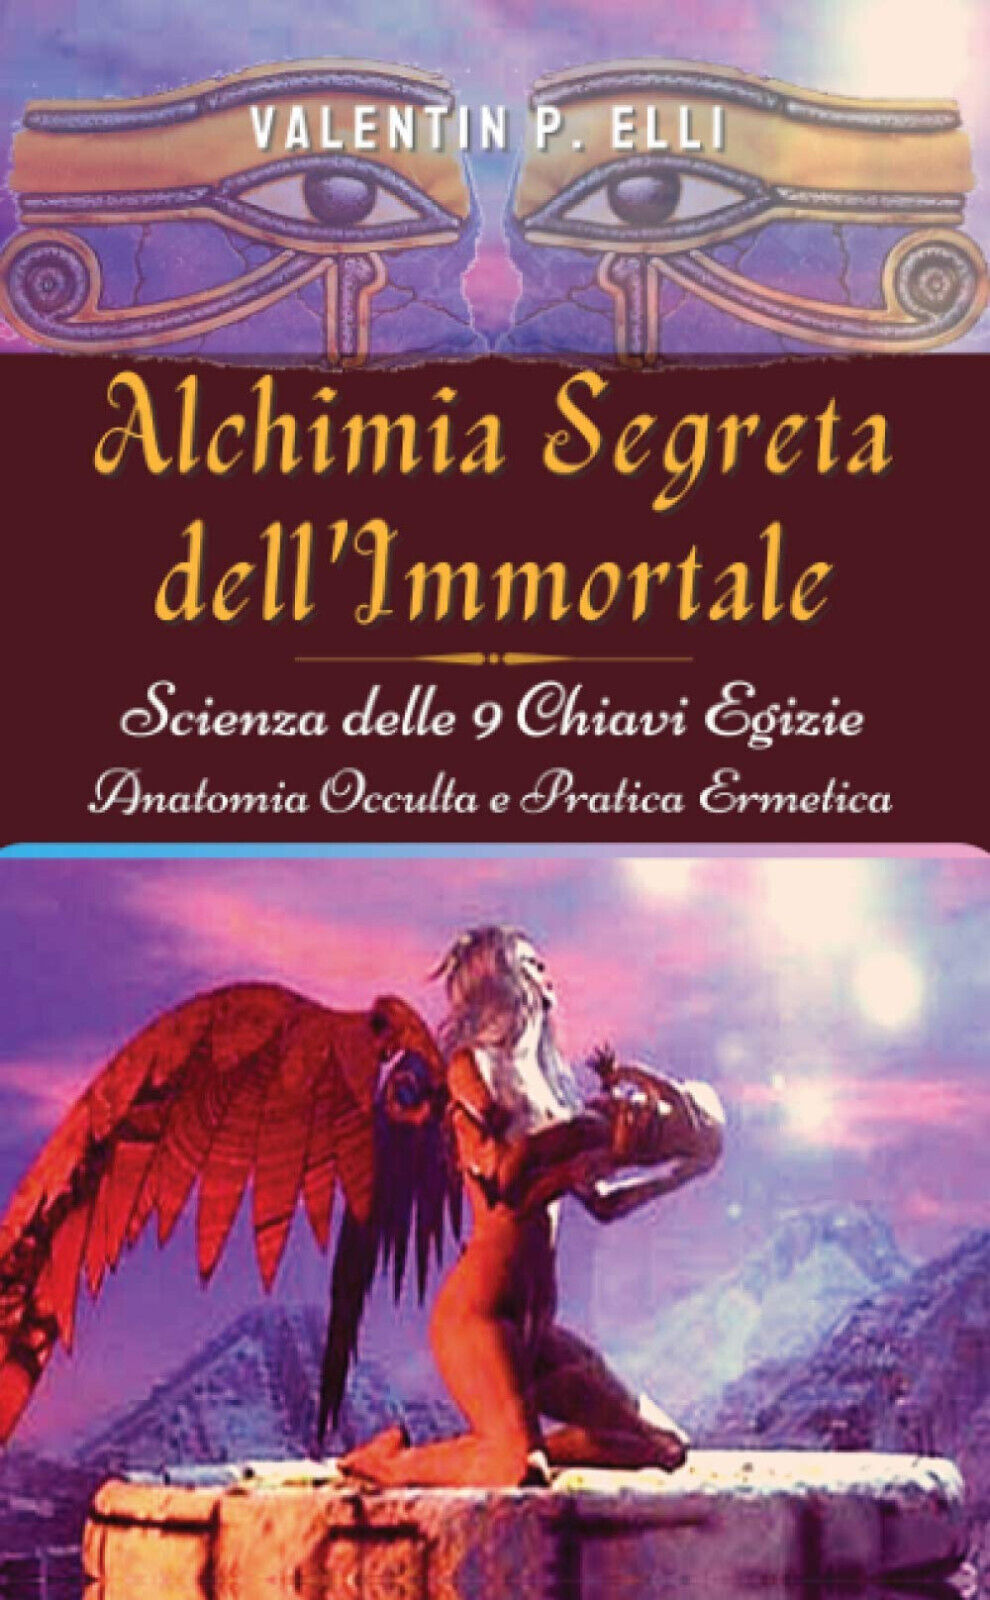 Alchimia Segreta dell'Immortale - Valentin P. Elli - StreetLib, 2020